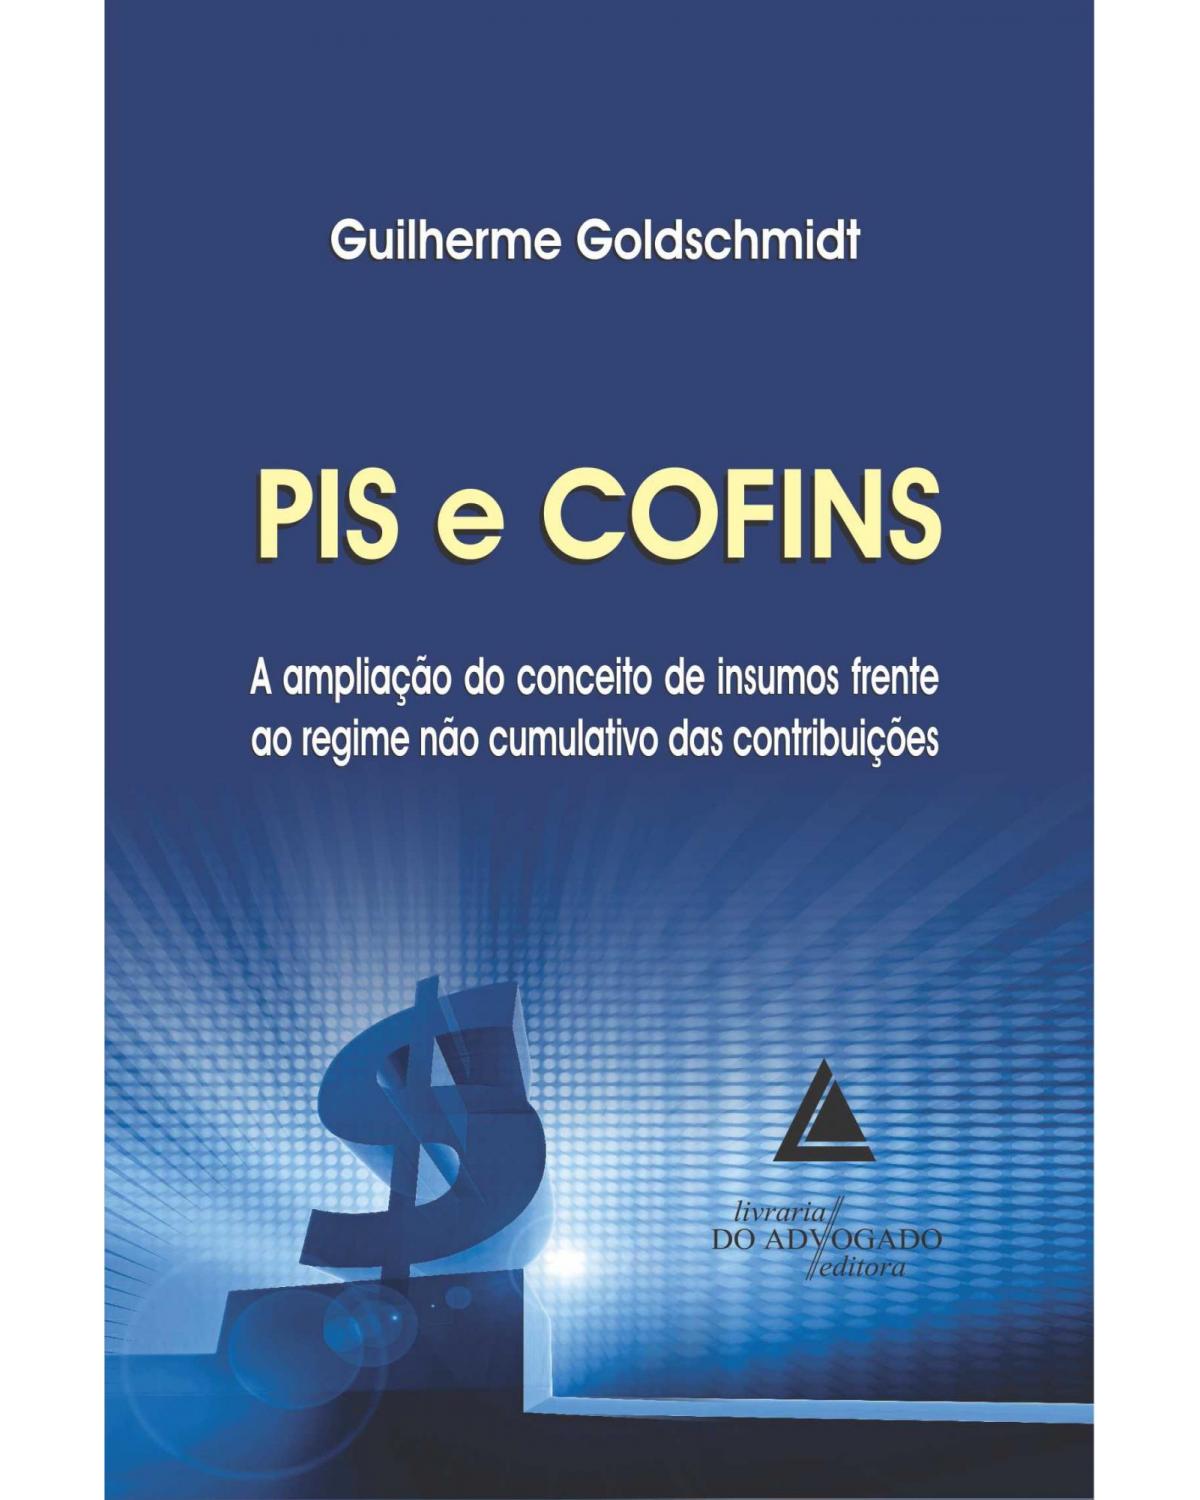 PIS e COFINS: A ampliação do conceito de insumos frente ao regime não cumulativo das contribuições - 1ª Edição | 2013